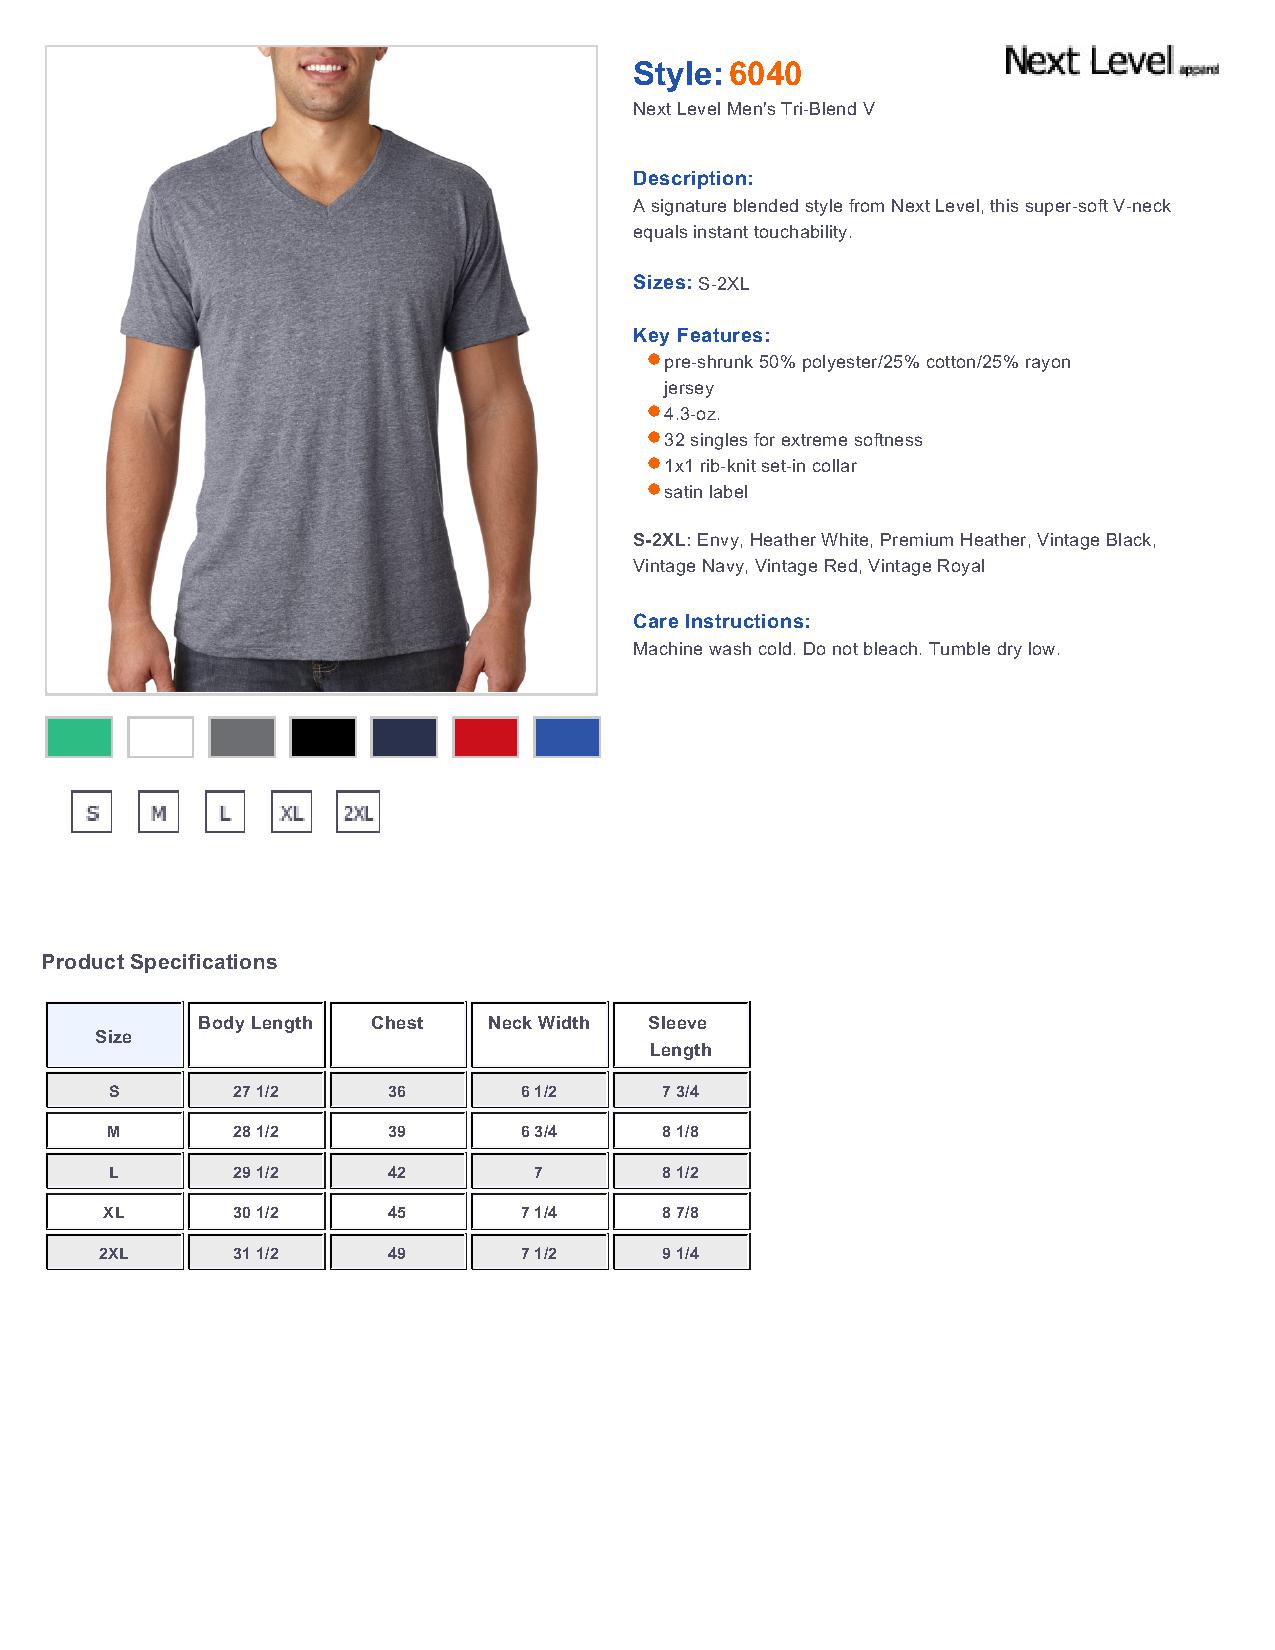 6040 Next Level Tri-Blend V $5.56 - T Shirts